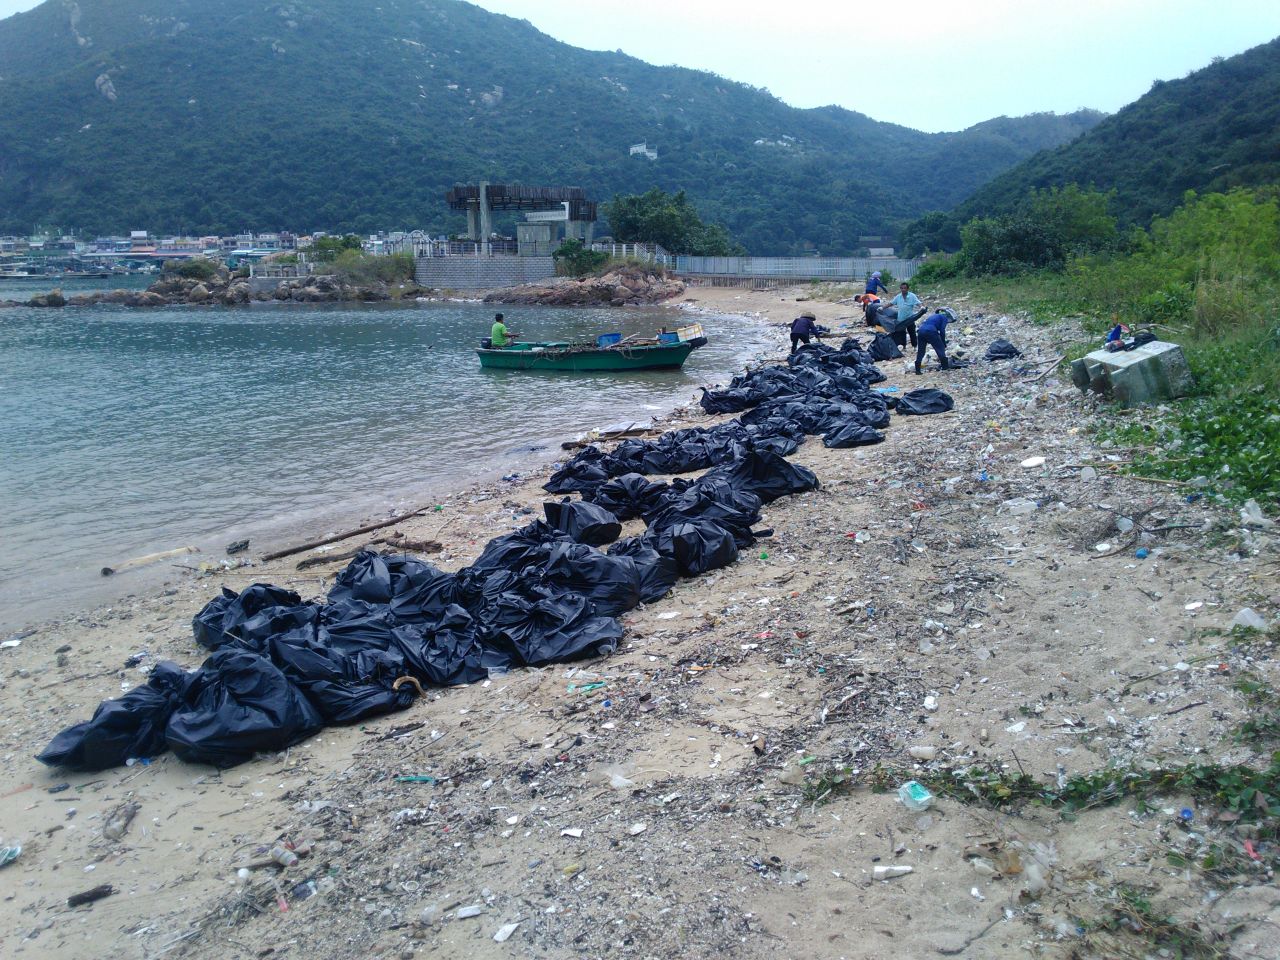 Trash being cleaned up on Sok Ku Wan beach.